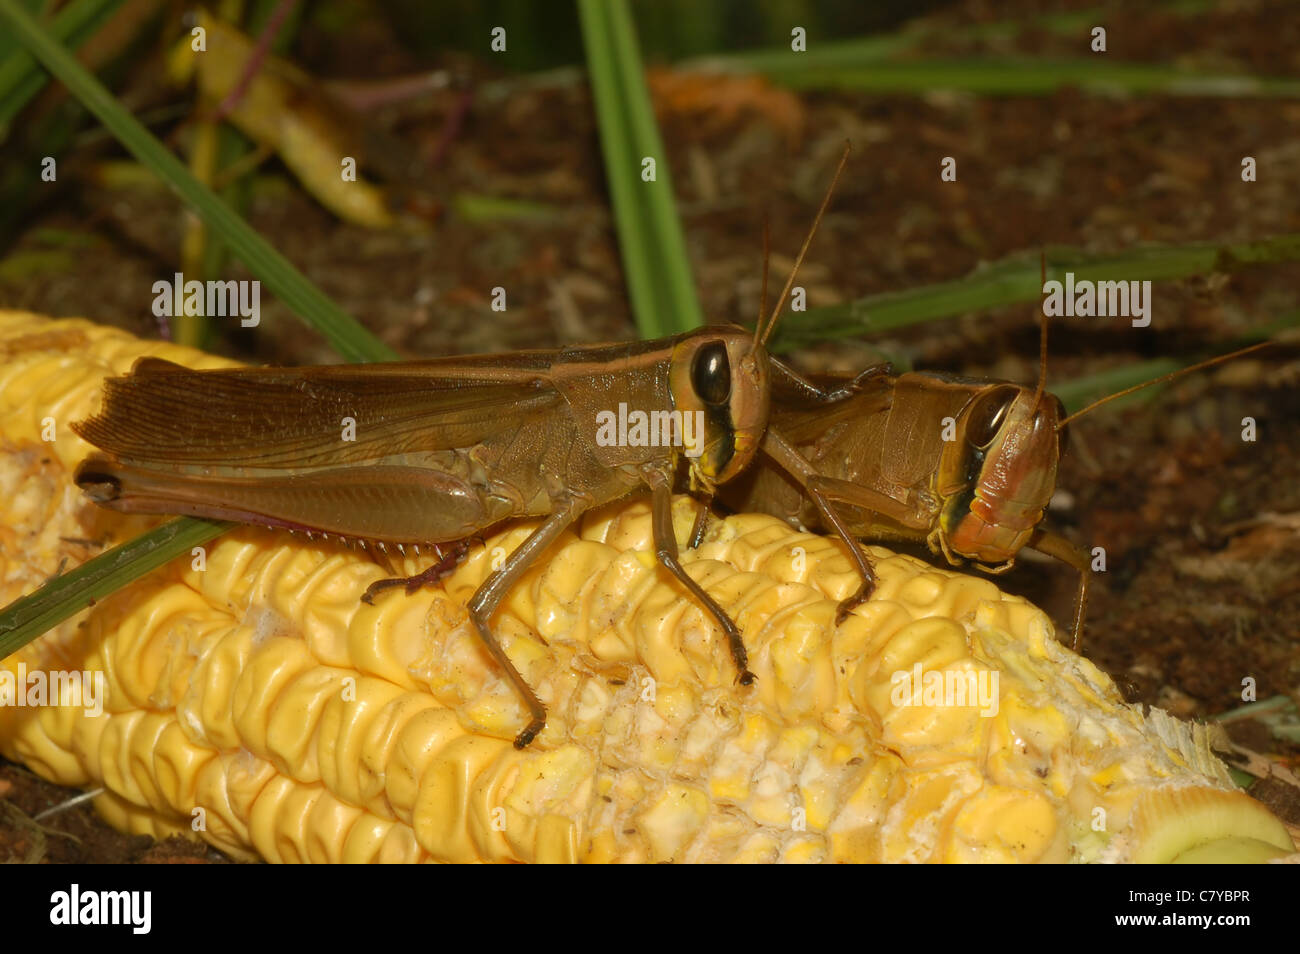 File:Farmer spreading grasshopper bait.jpg - Wikimedia Commons